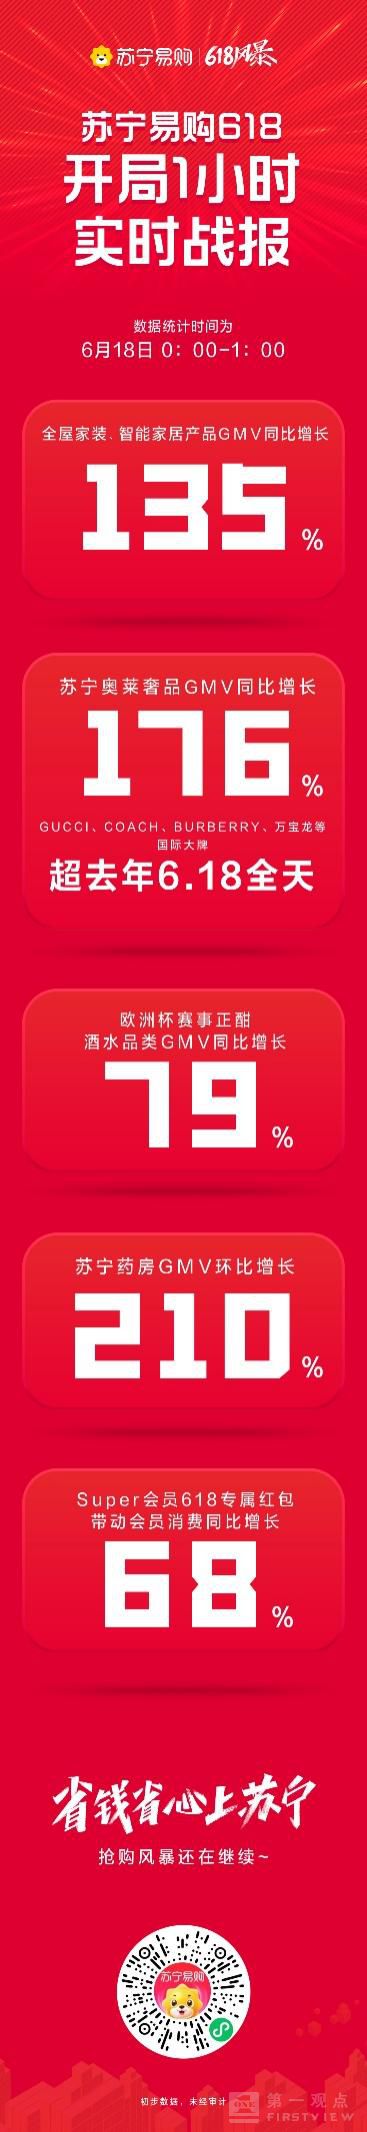 苏宁618开局战报 1小时酒水销售增长79%